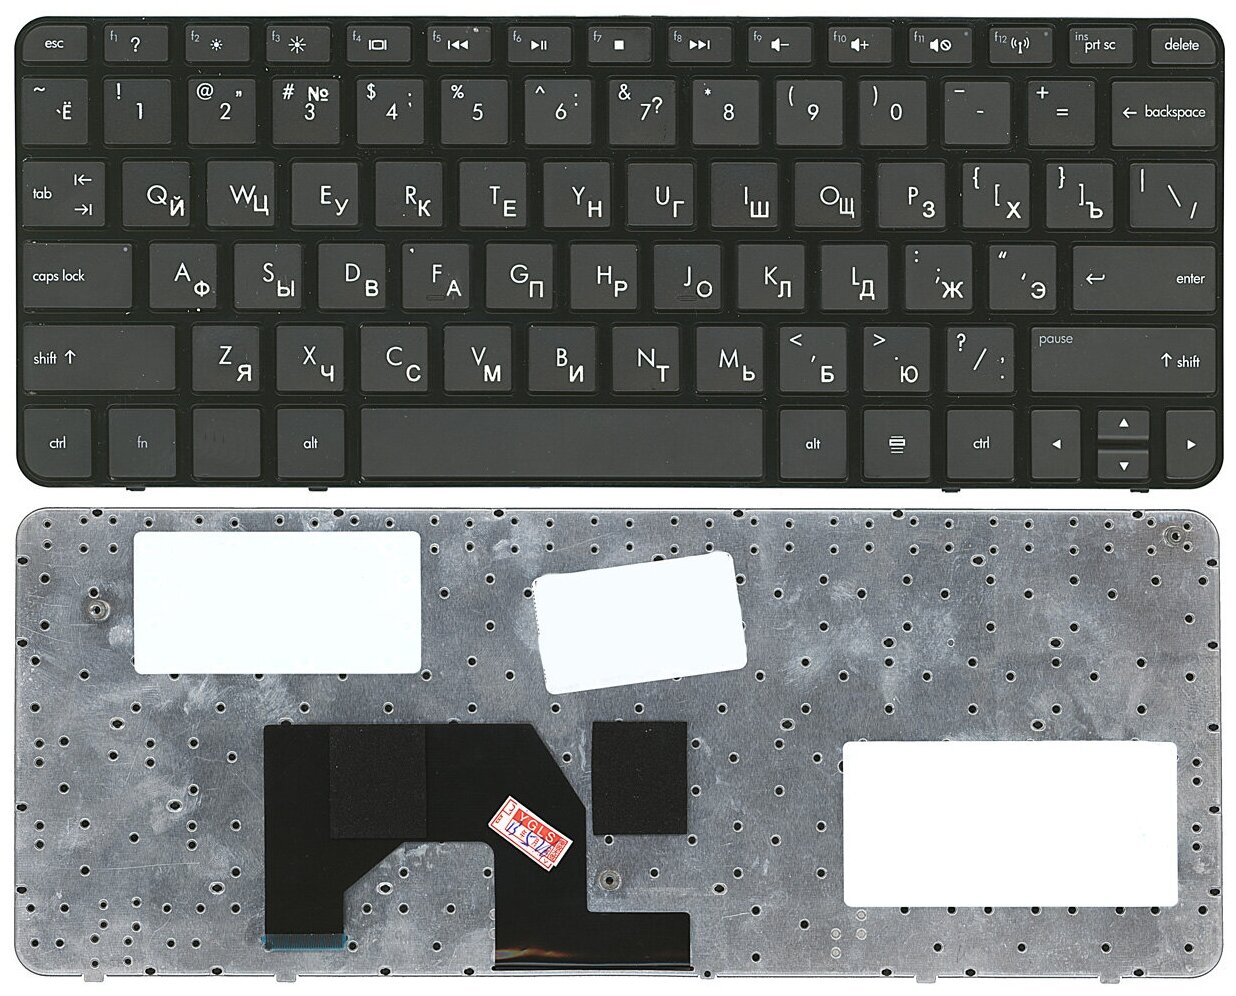 Клавиатура для ноутбука HP Mini 210-1000 черная с черной рамкой